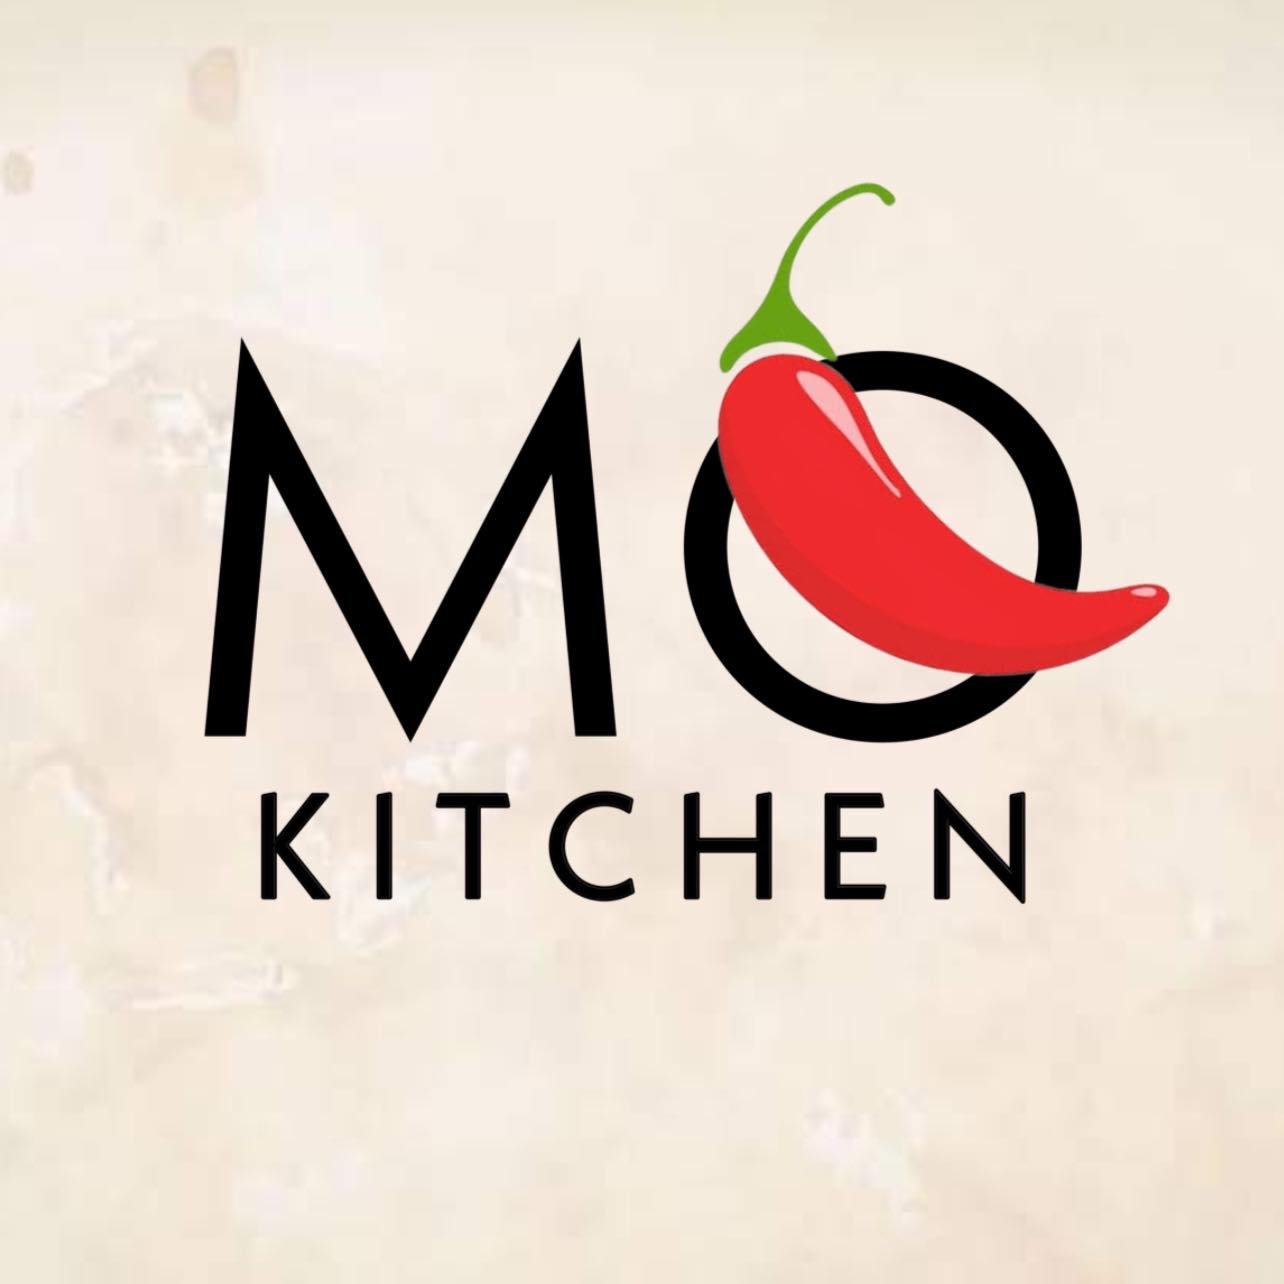 MQ Kitchen Bagoong Bangus Belly 200g